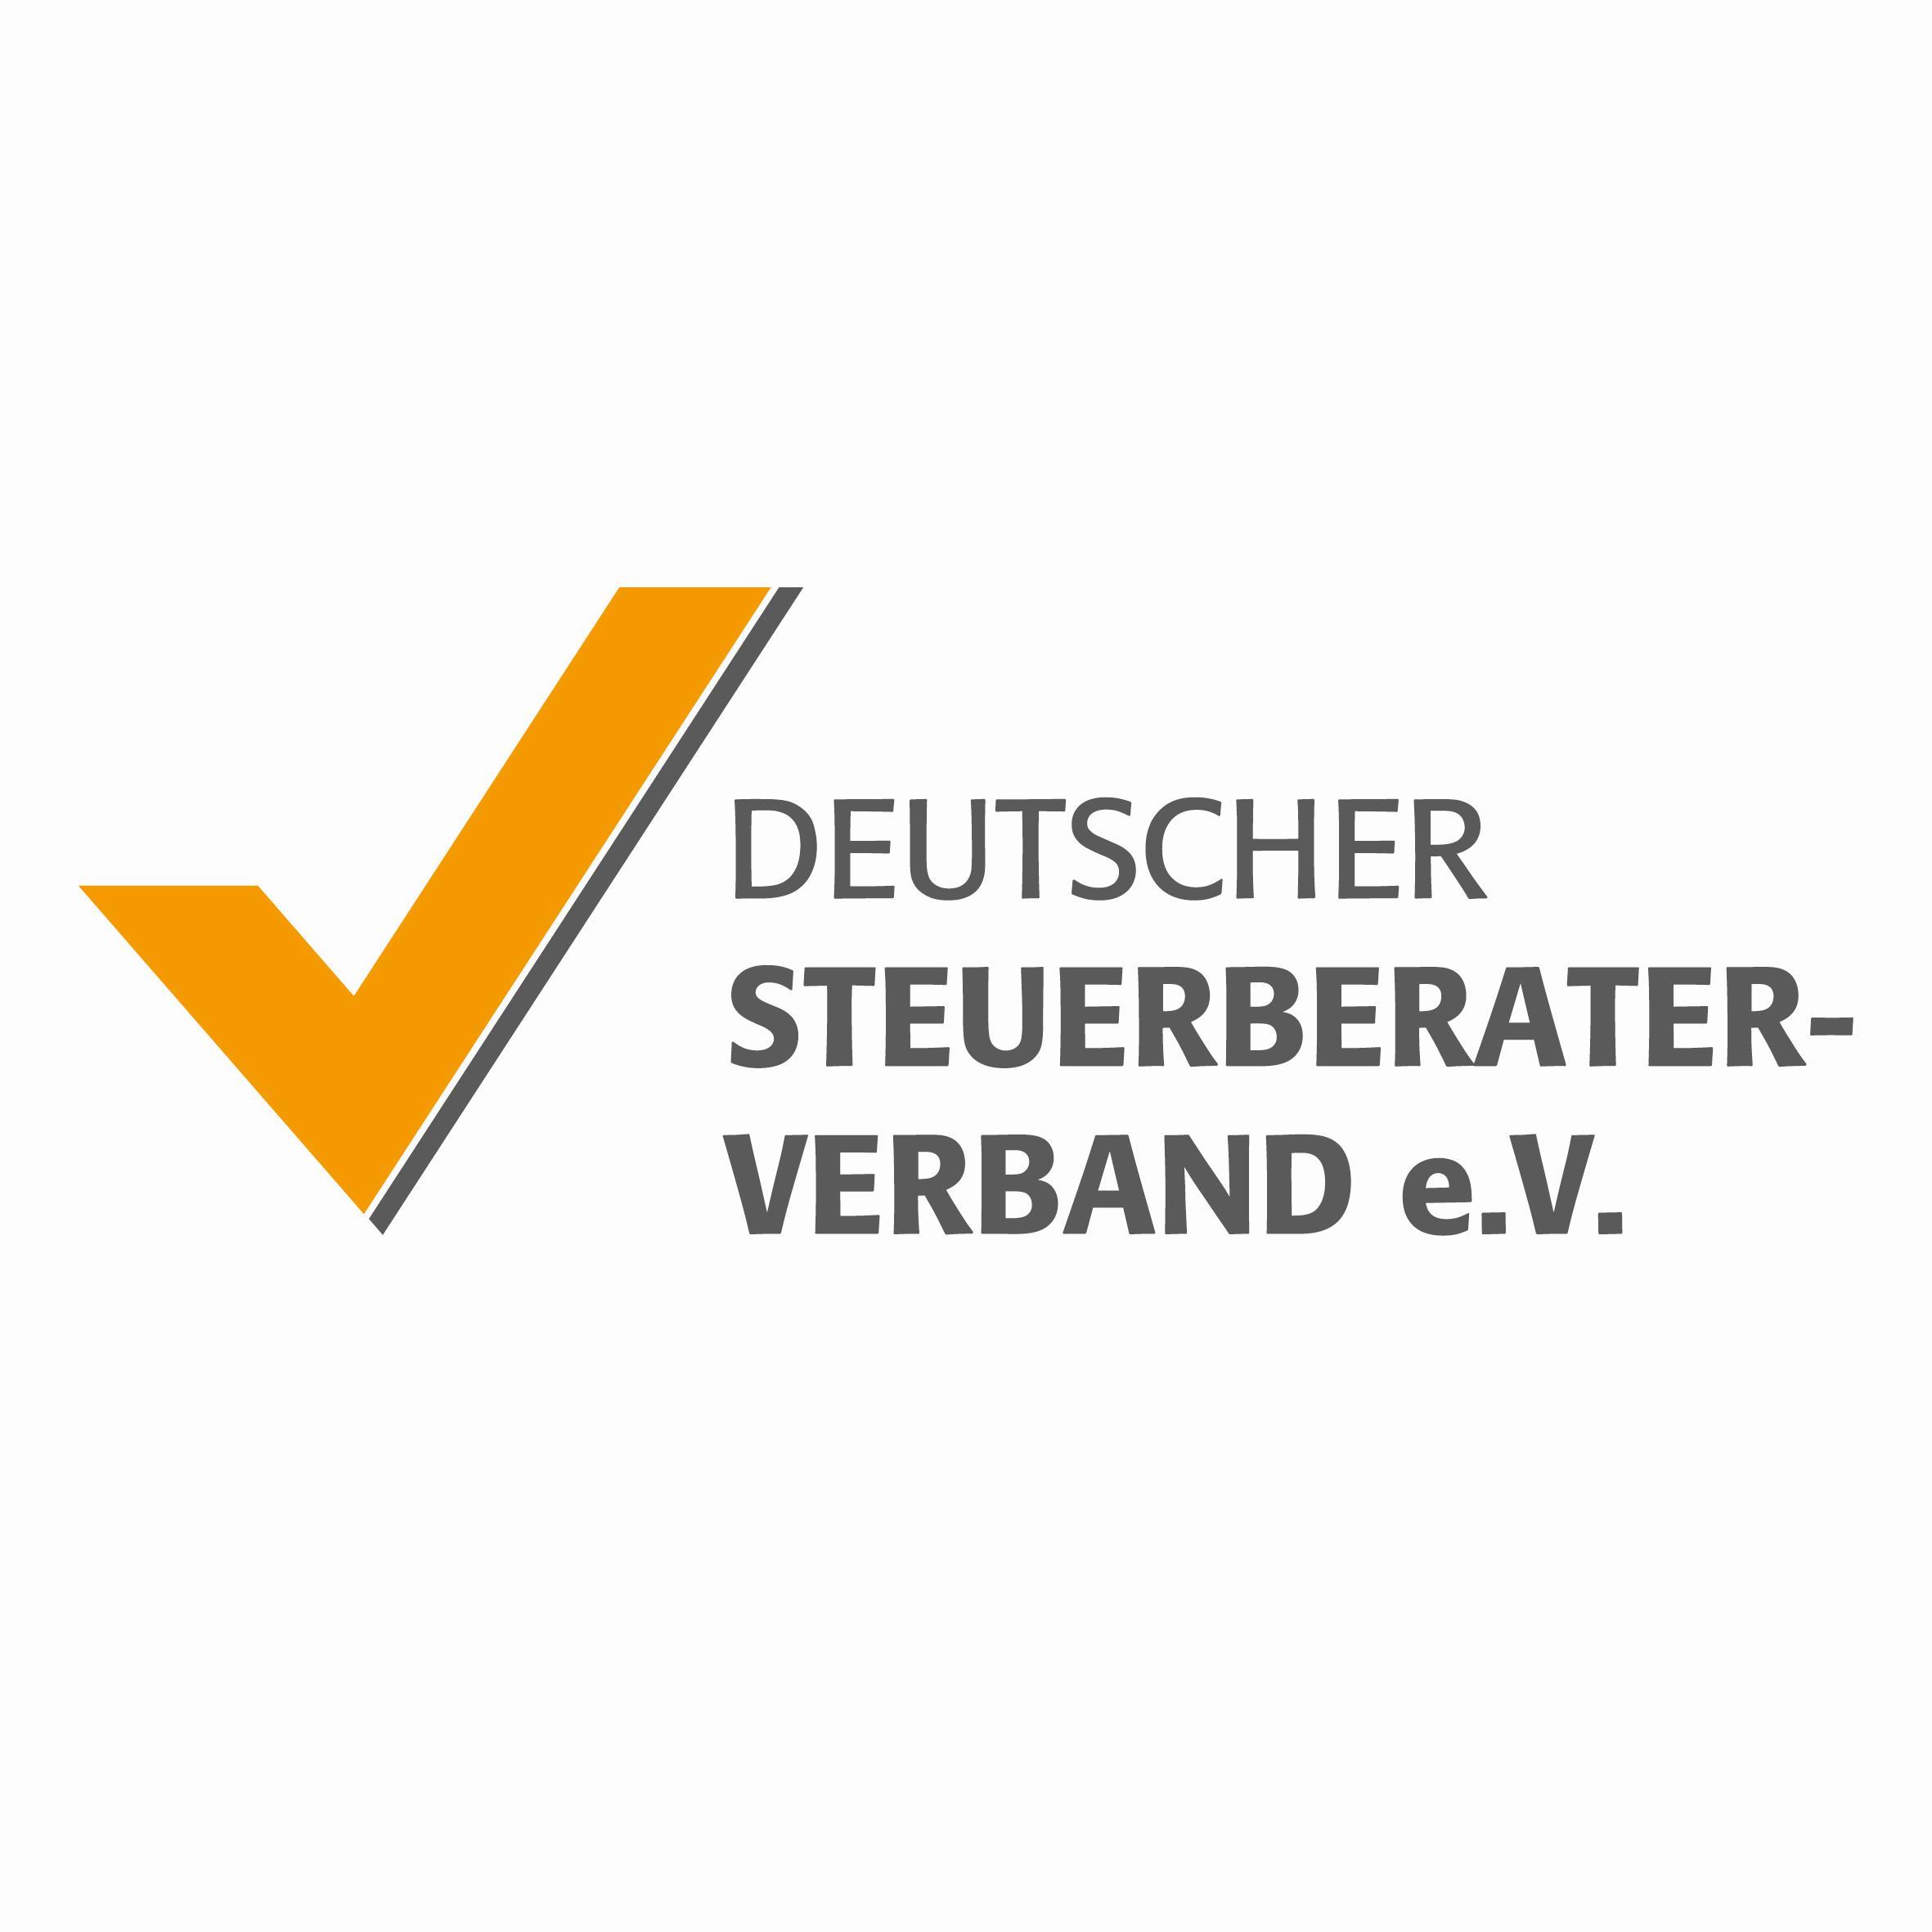 Wir sind die Dachorganisation der deutschen Steuerberaterverbände. Hier finden Sie Gezwitscher zu Tax, Facts, News & Europa rund um den Beruf! RT ≠ endorsement